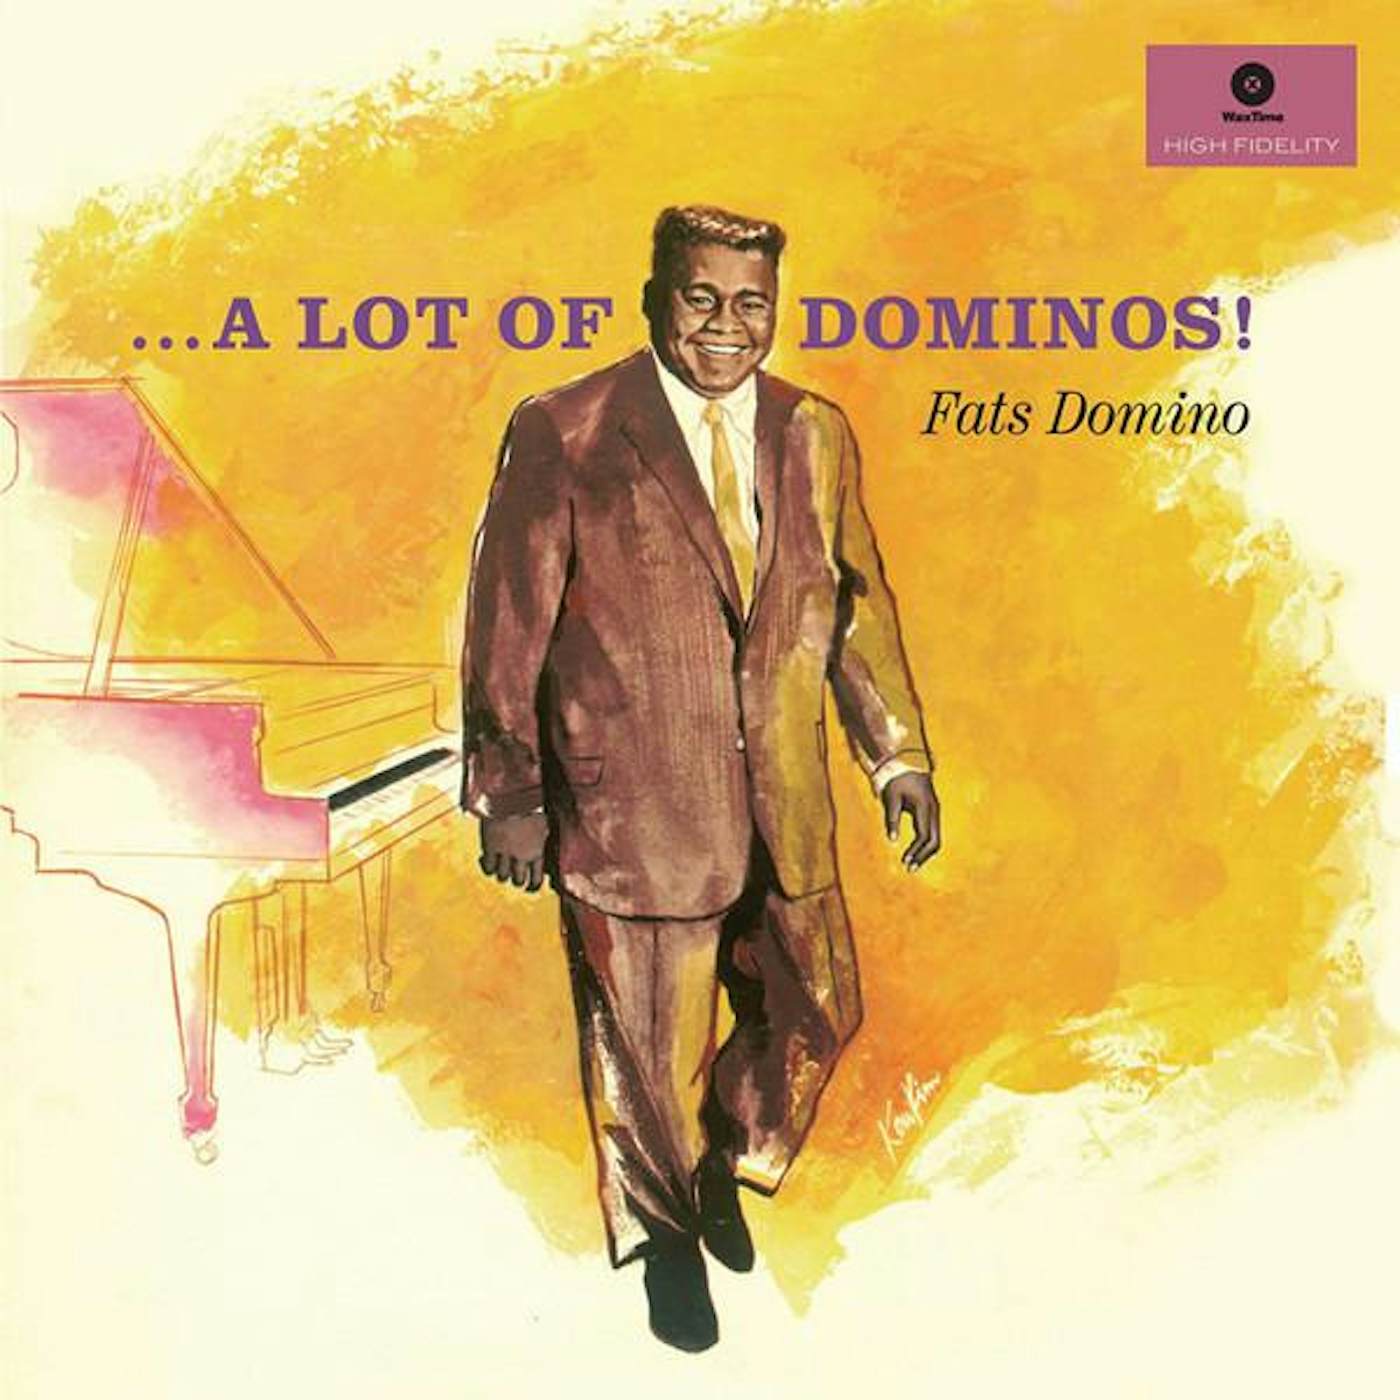 Fats Domino LOT OF DOMINOS (2 BONUS TRACKS (180G) Vinyl Record